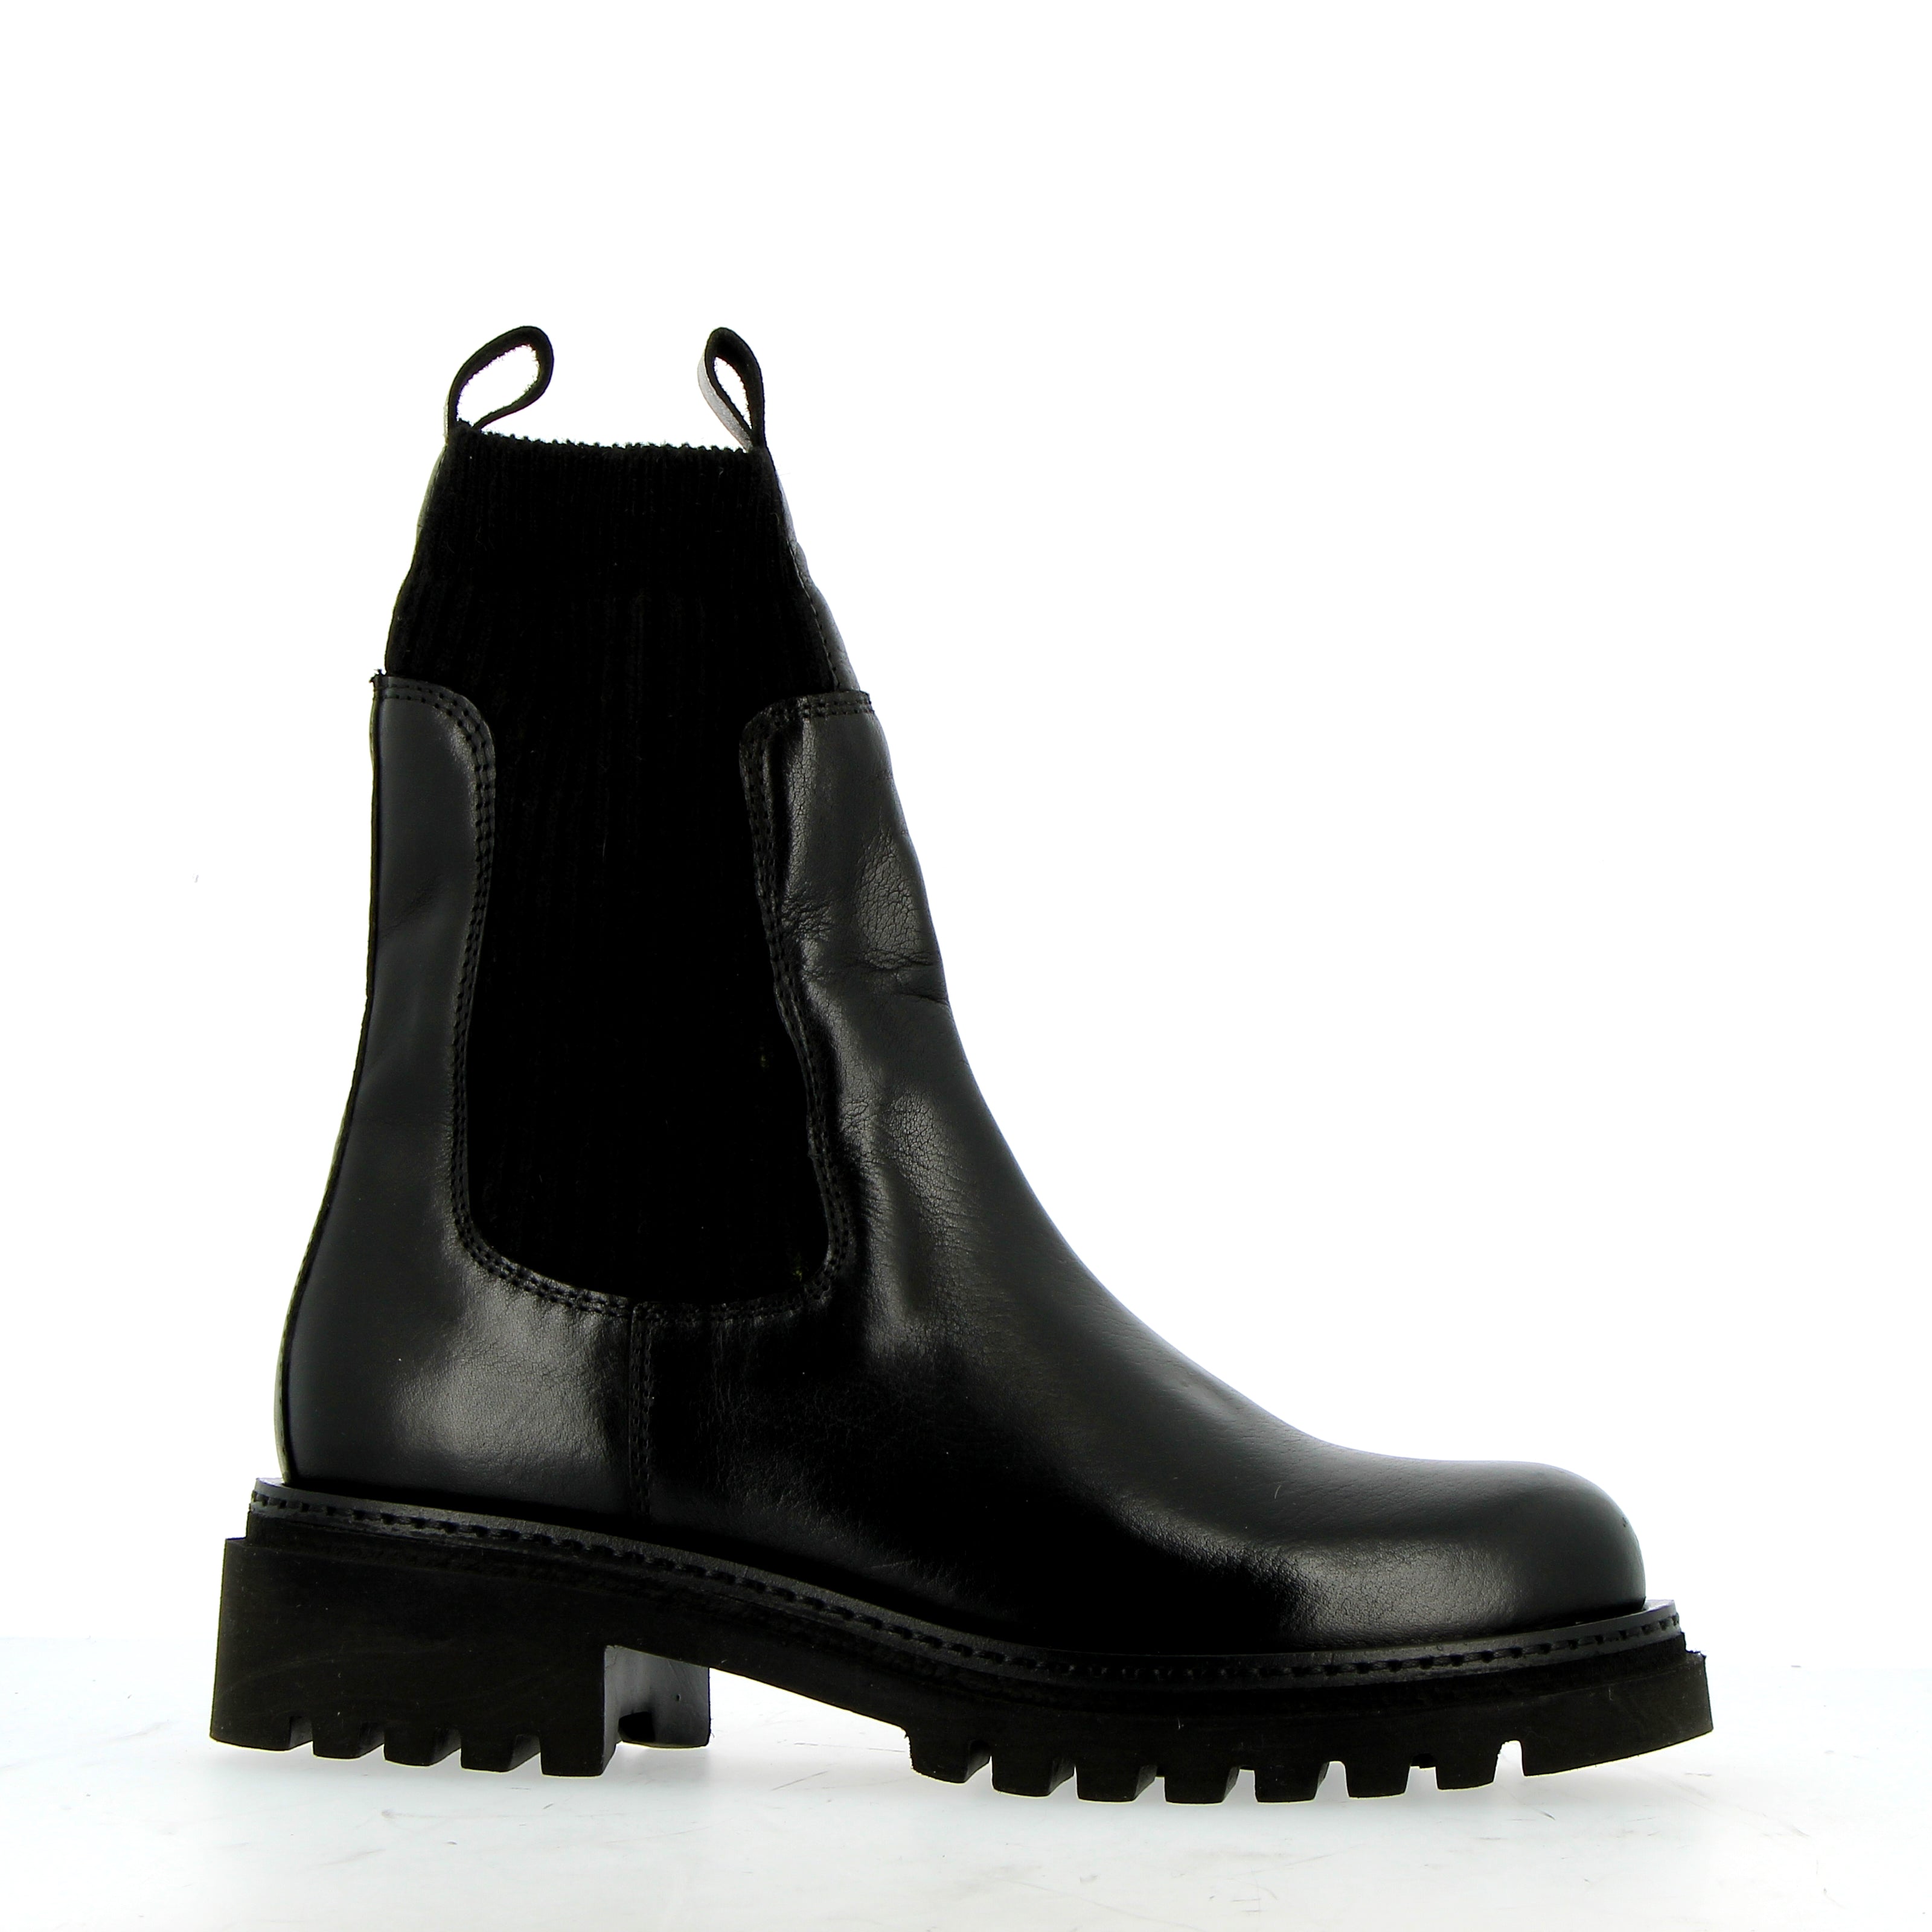 Chelsea boot in morbida pelle nera con elastici a calza